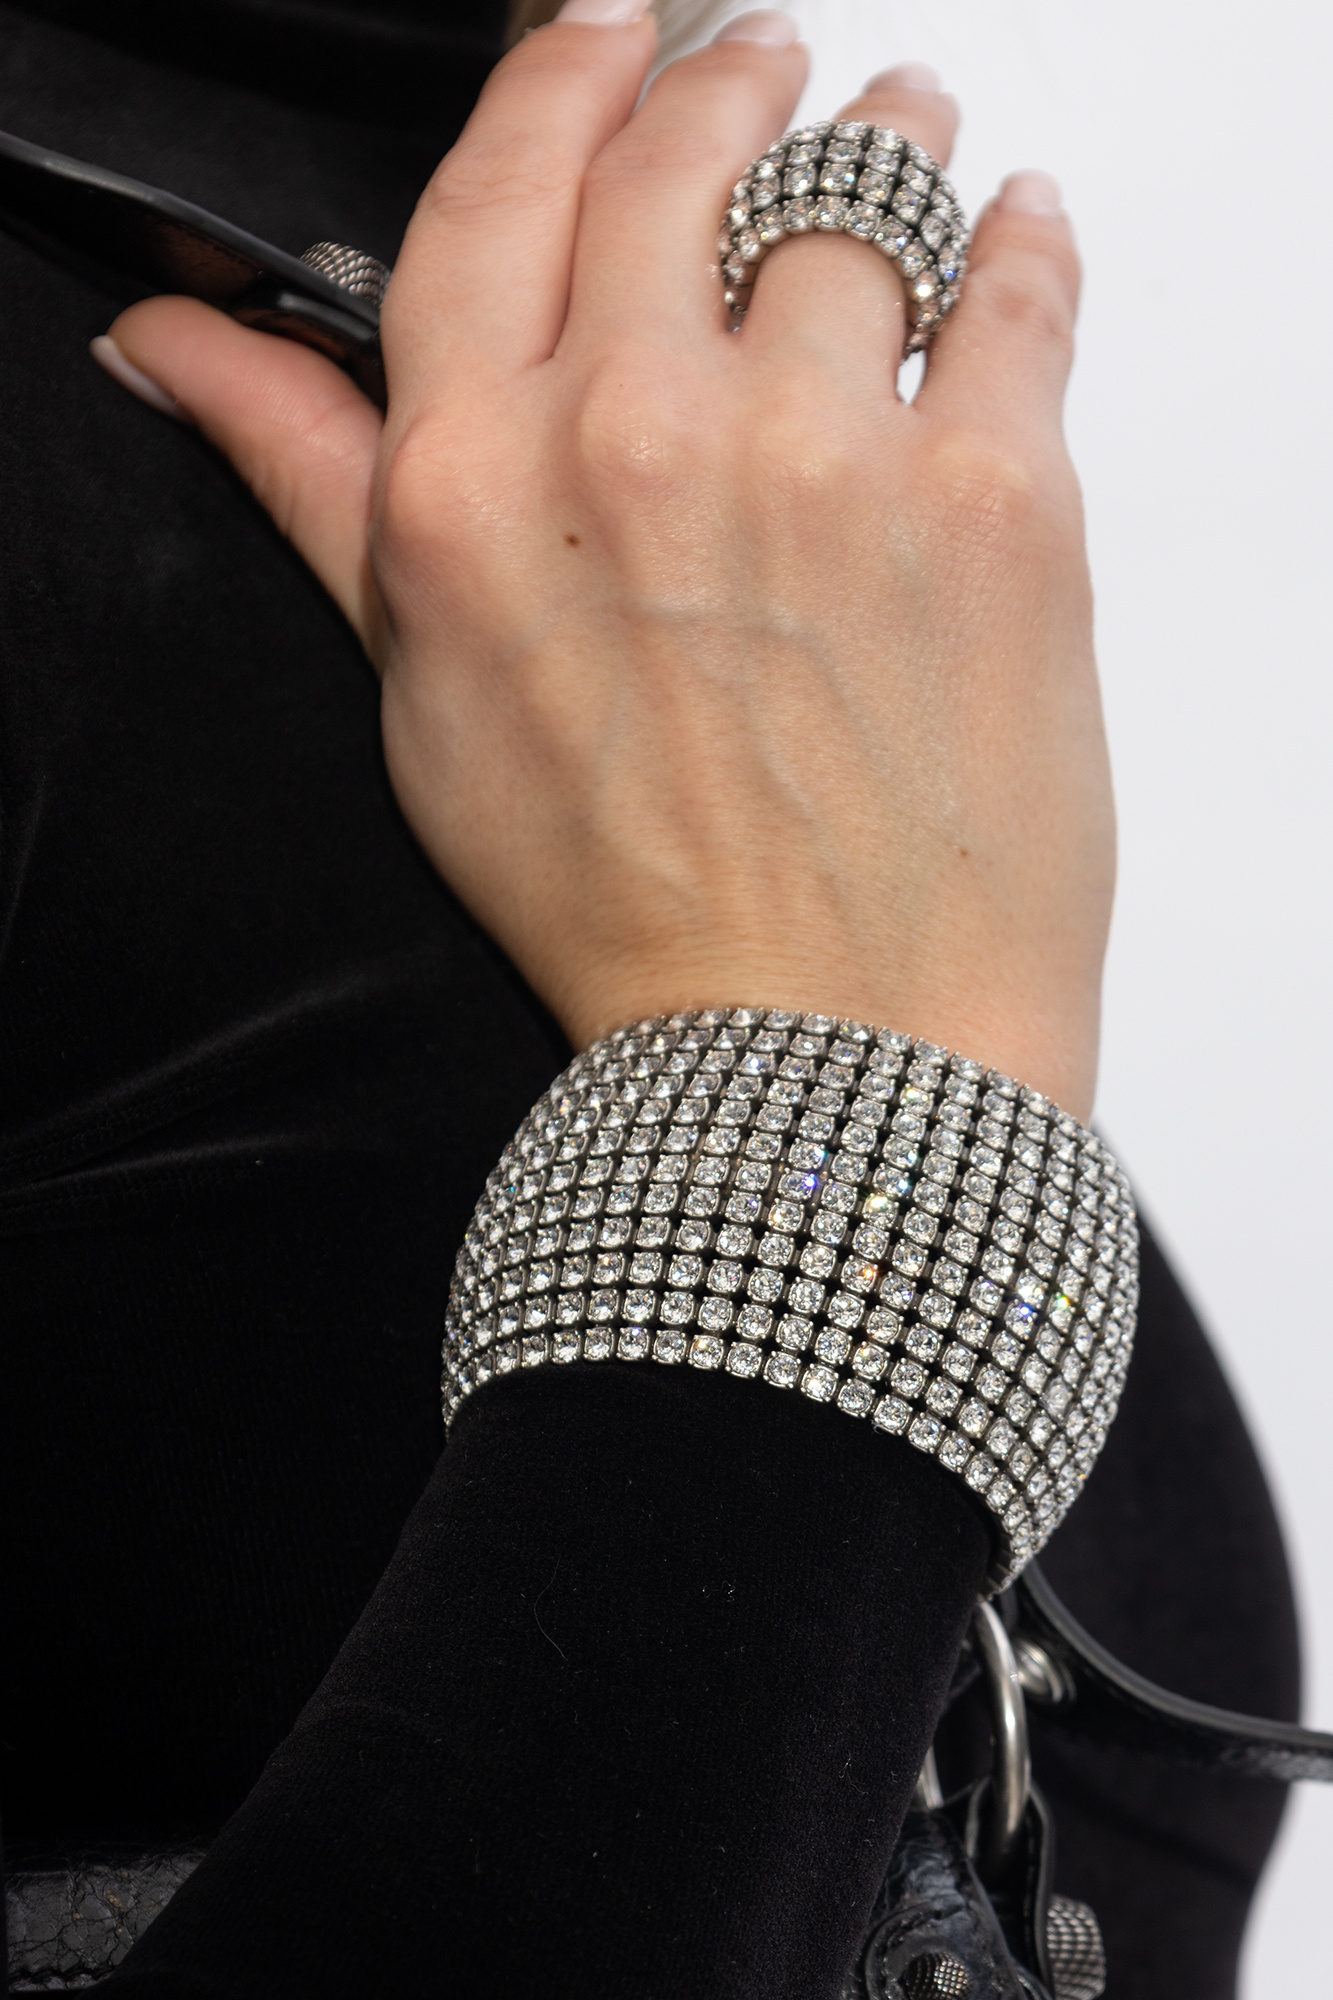 Balenciaga ‘Glam’ crystal-embellished bracelet